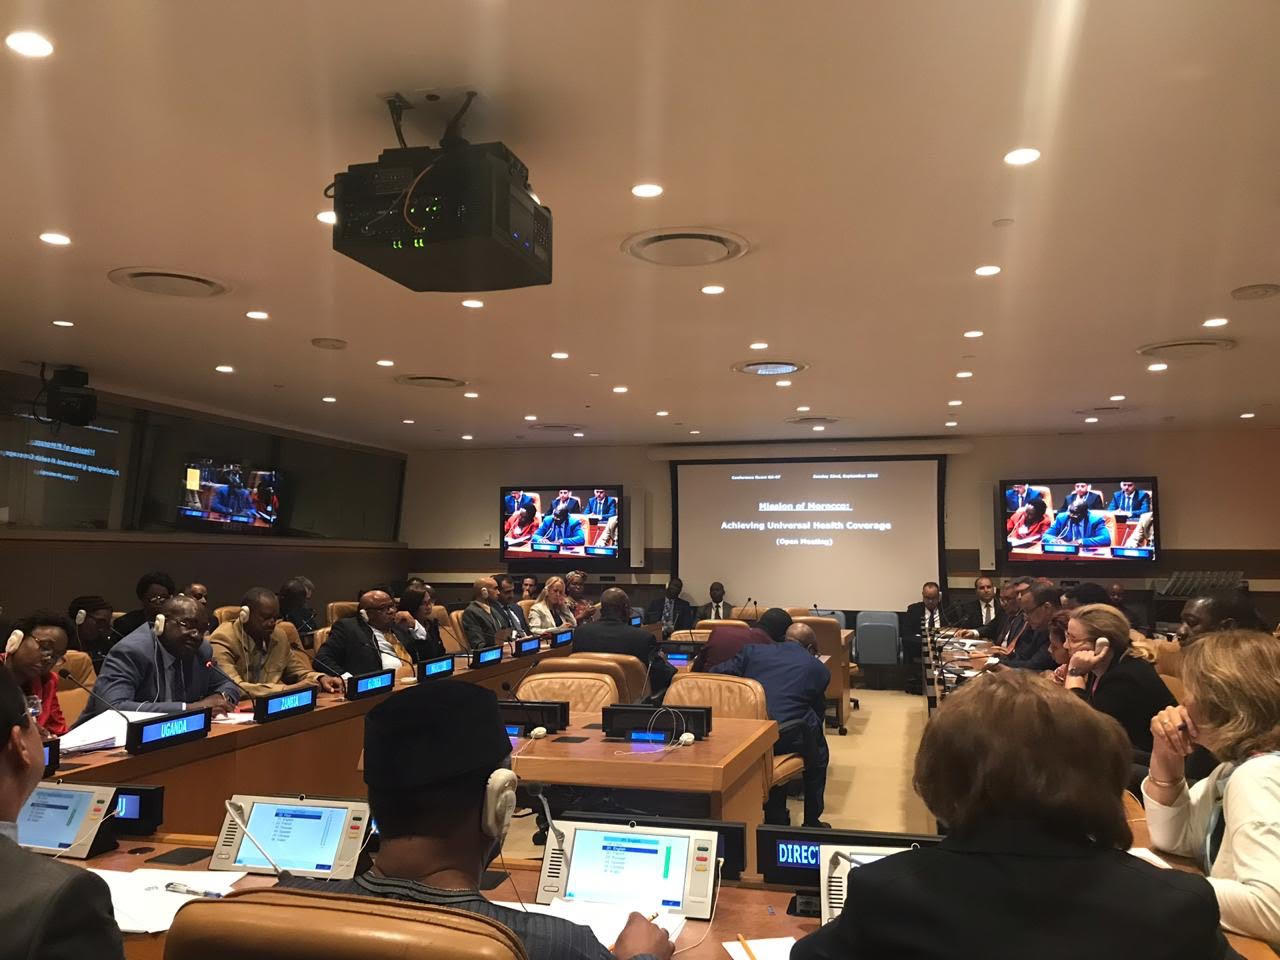 Réunion-débat sur le financement de la couverture santé universelle à l’Assemblée générale des Nations Unies, 23 septembre 2019